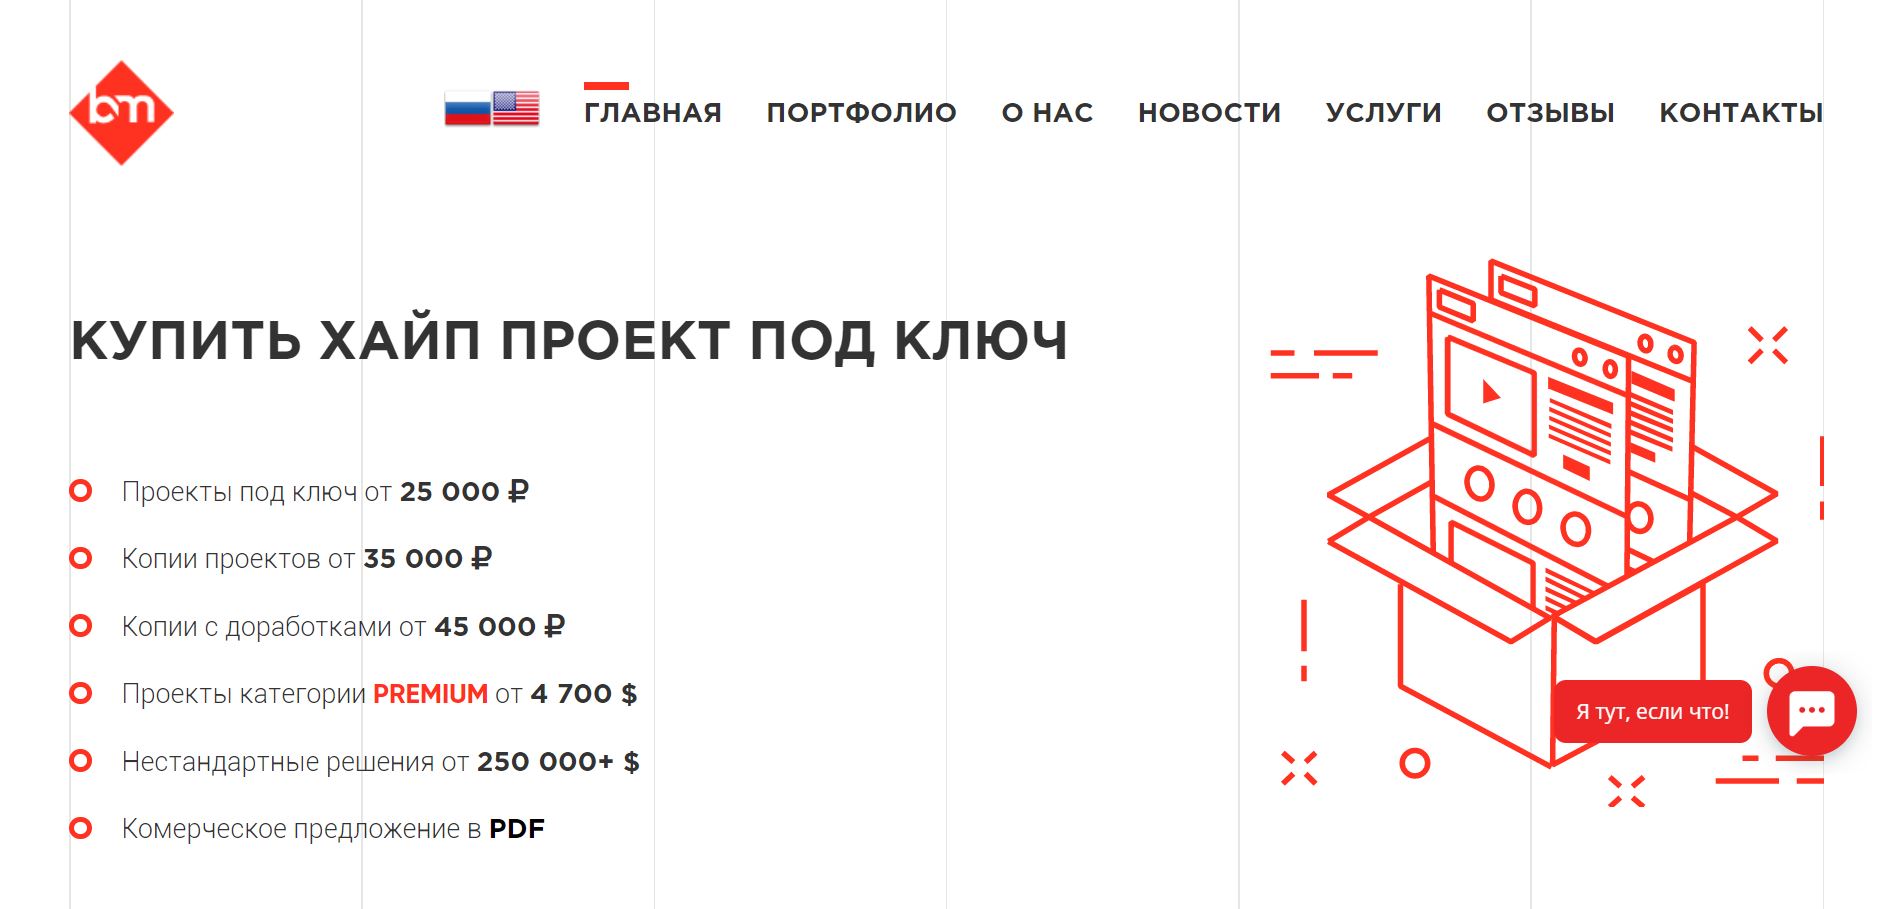 Blitz-market.ru – Обзор и отзыв о веб-студии по созданию хайпов под ключ